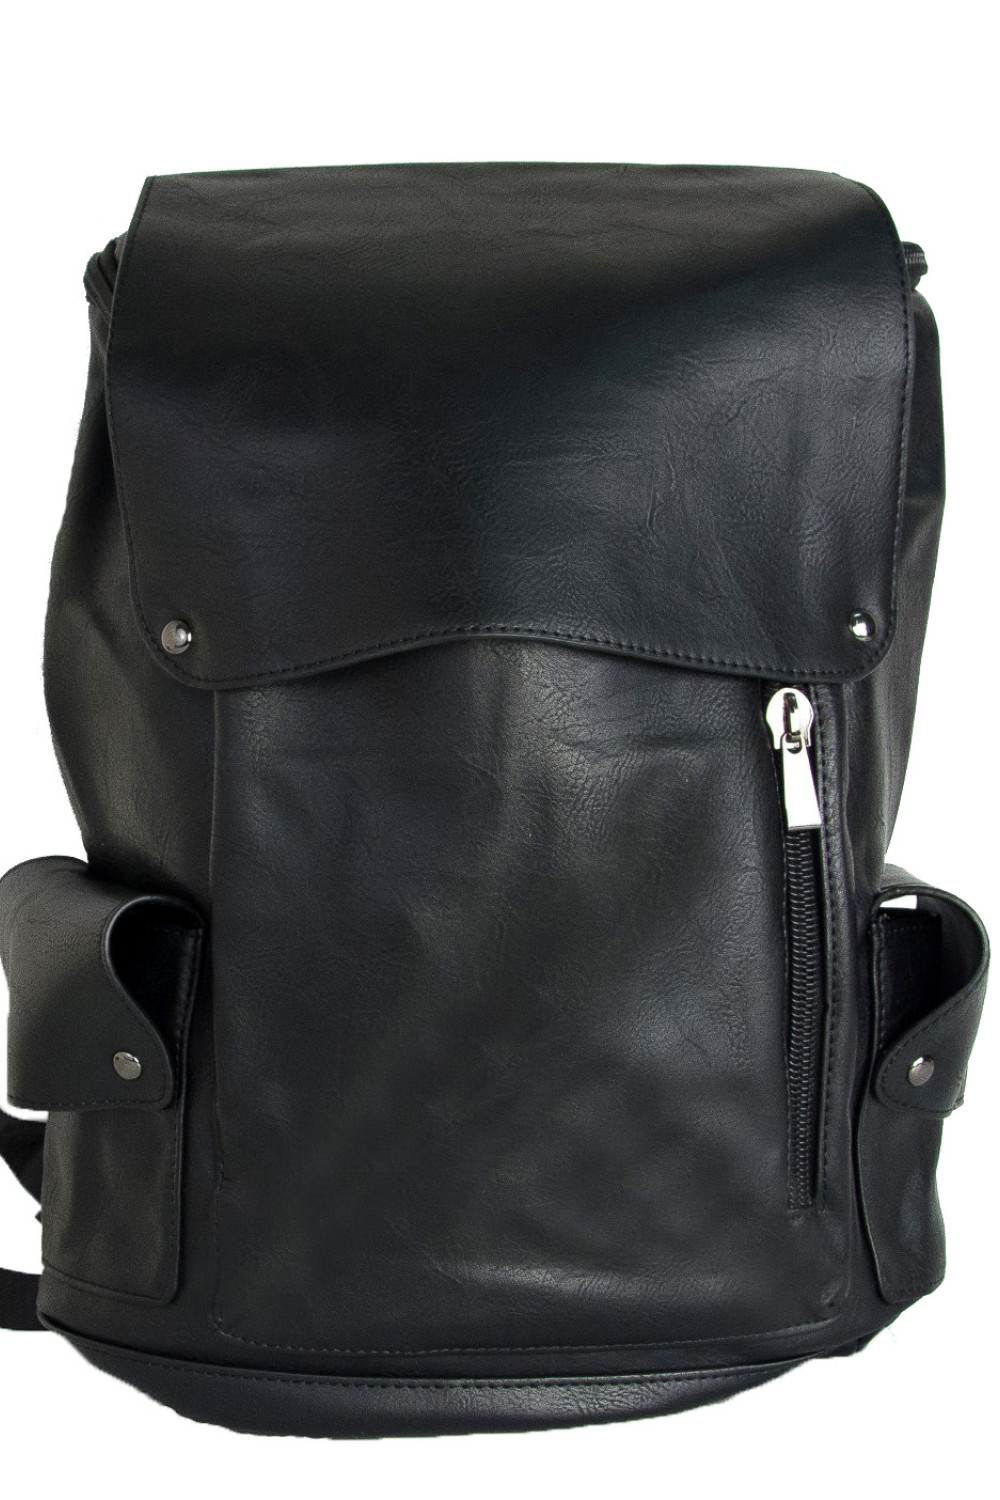 Ανδρικό μαύρο Backpack δερματίνη με τσεπάκια S905